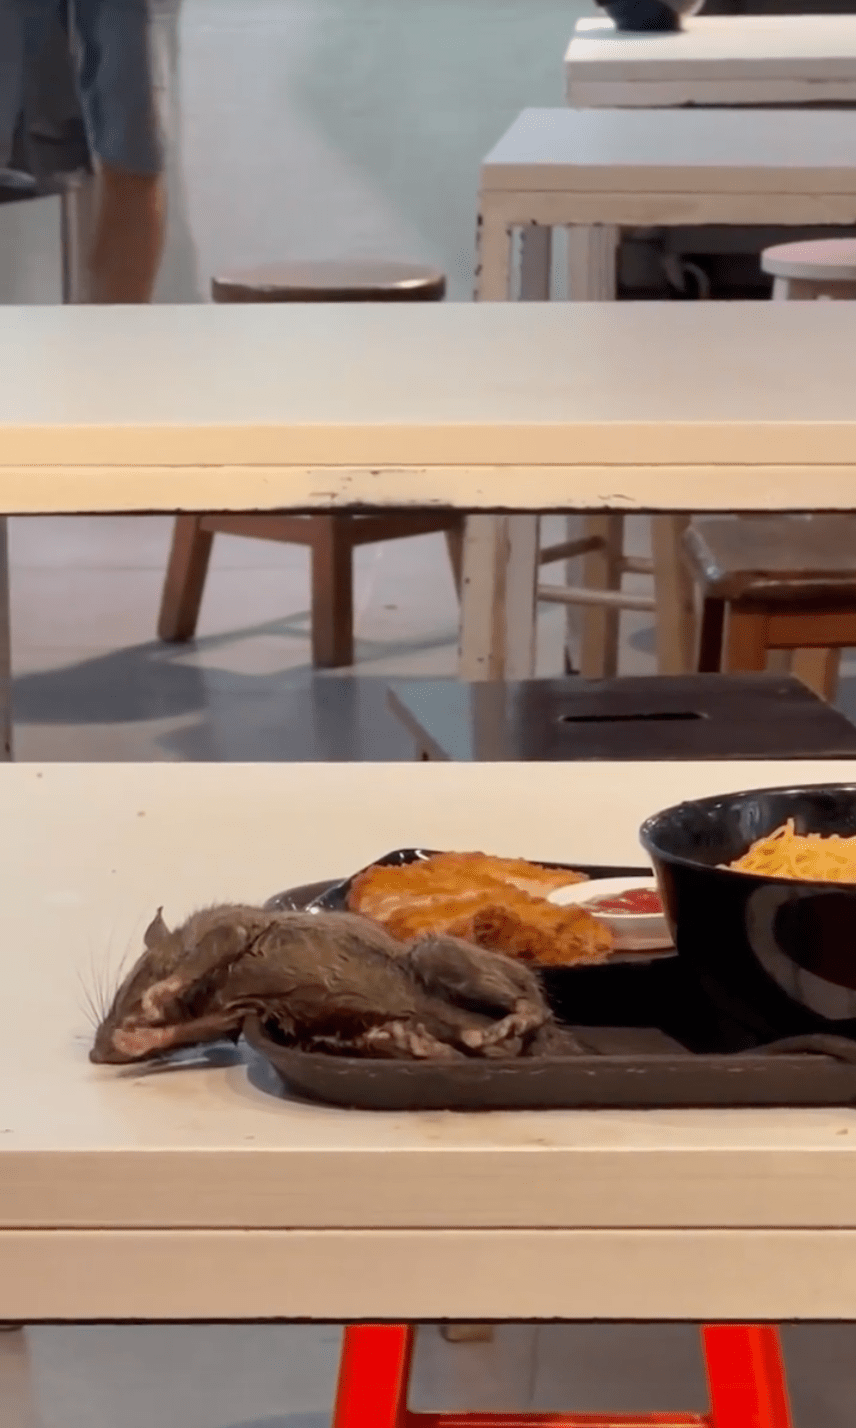 一只手掌大小的乾瘦老鼠躺在食客的餐盘之上。